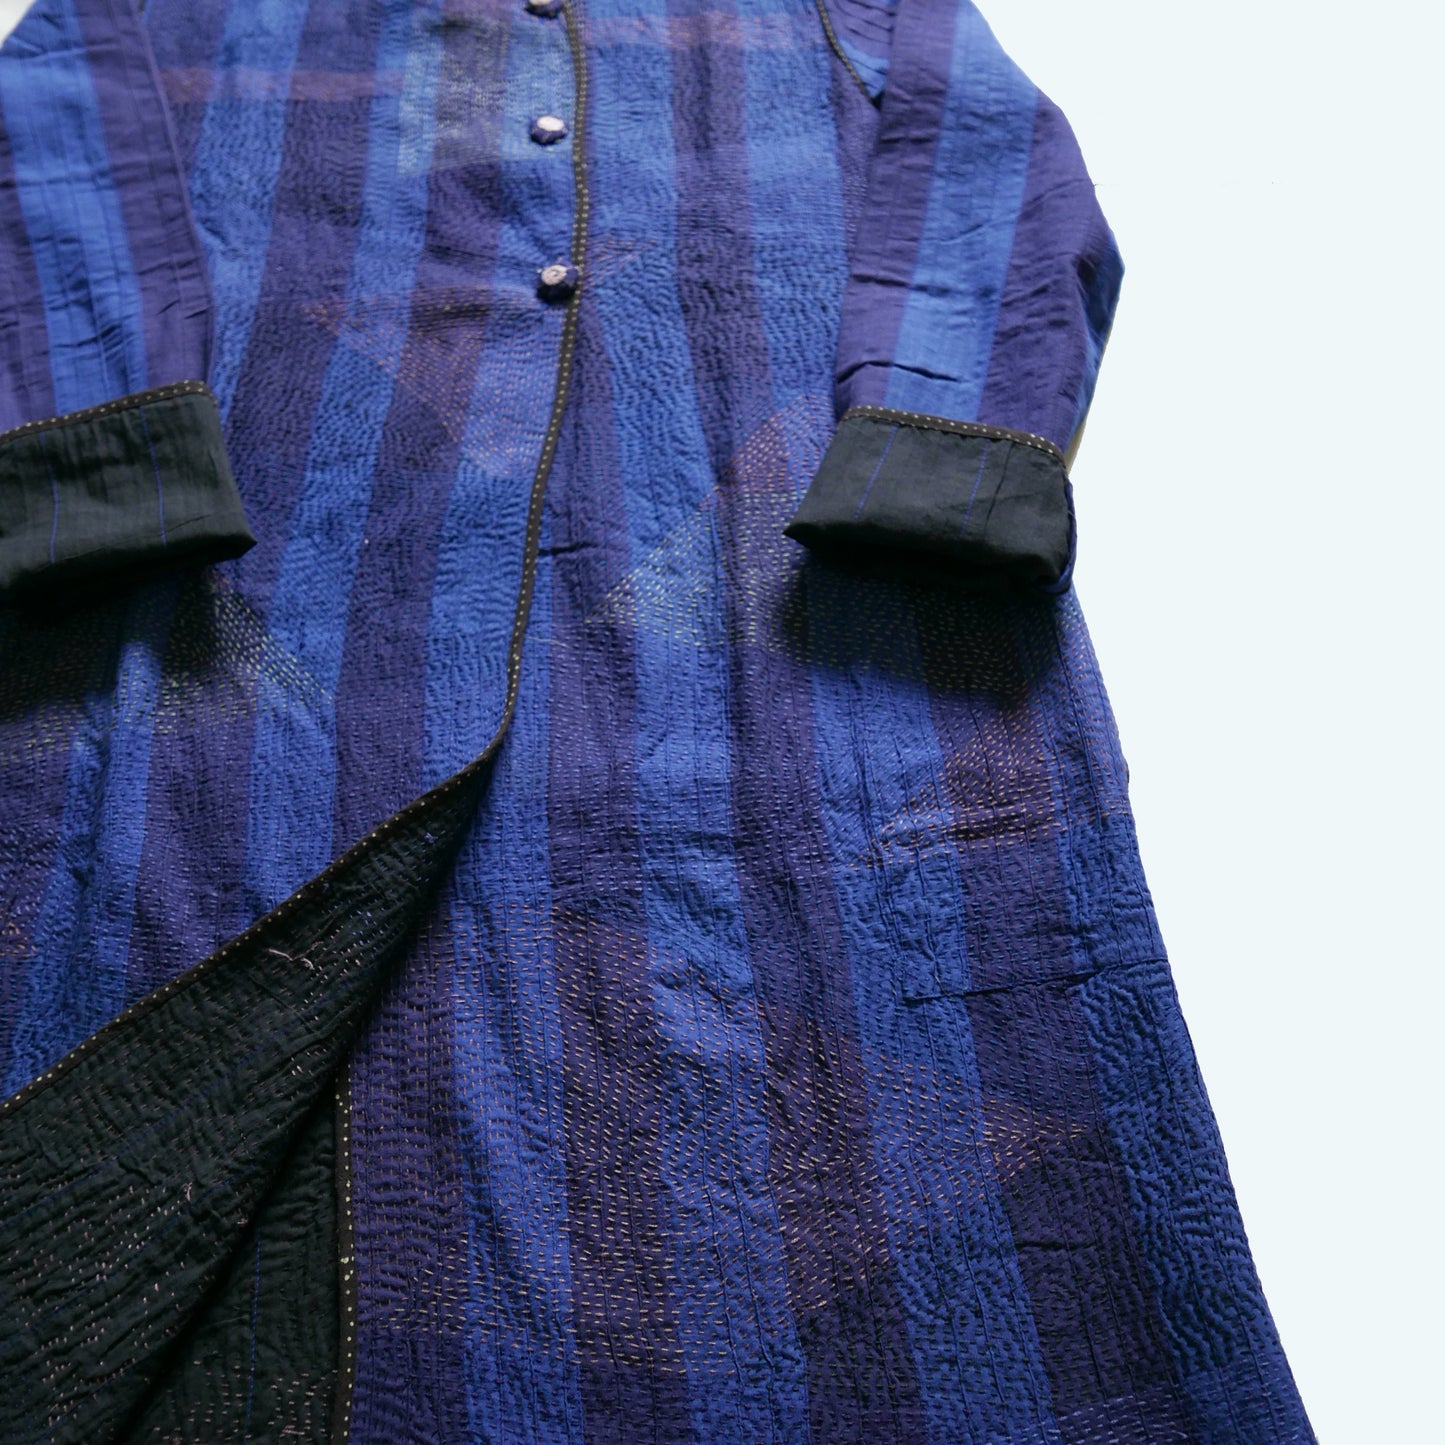 India, Indigene,Repurposed Cotton Embroidered Jacket